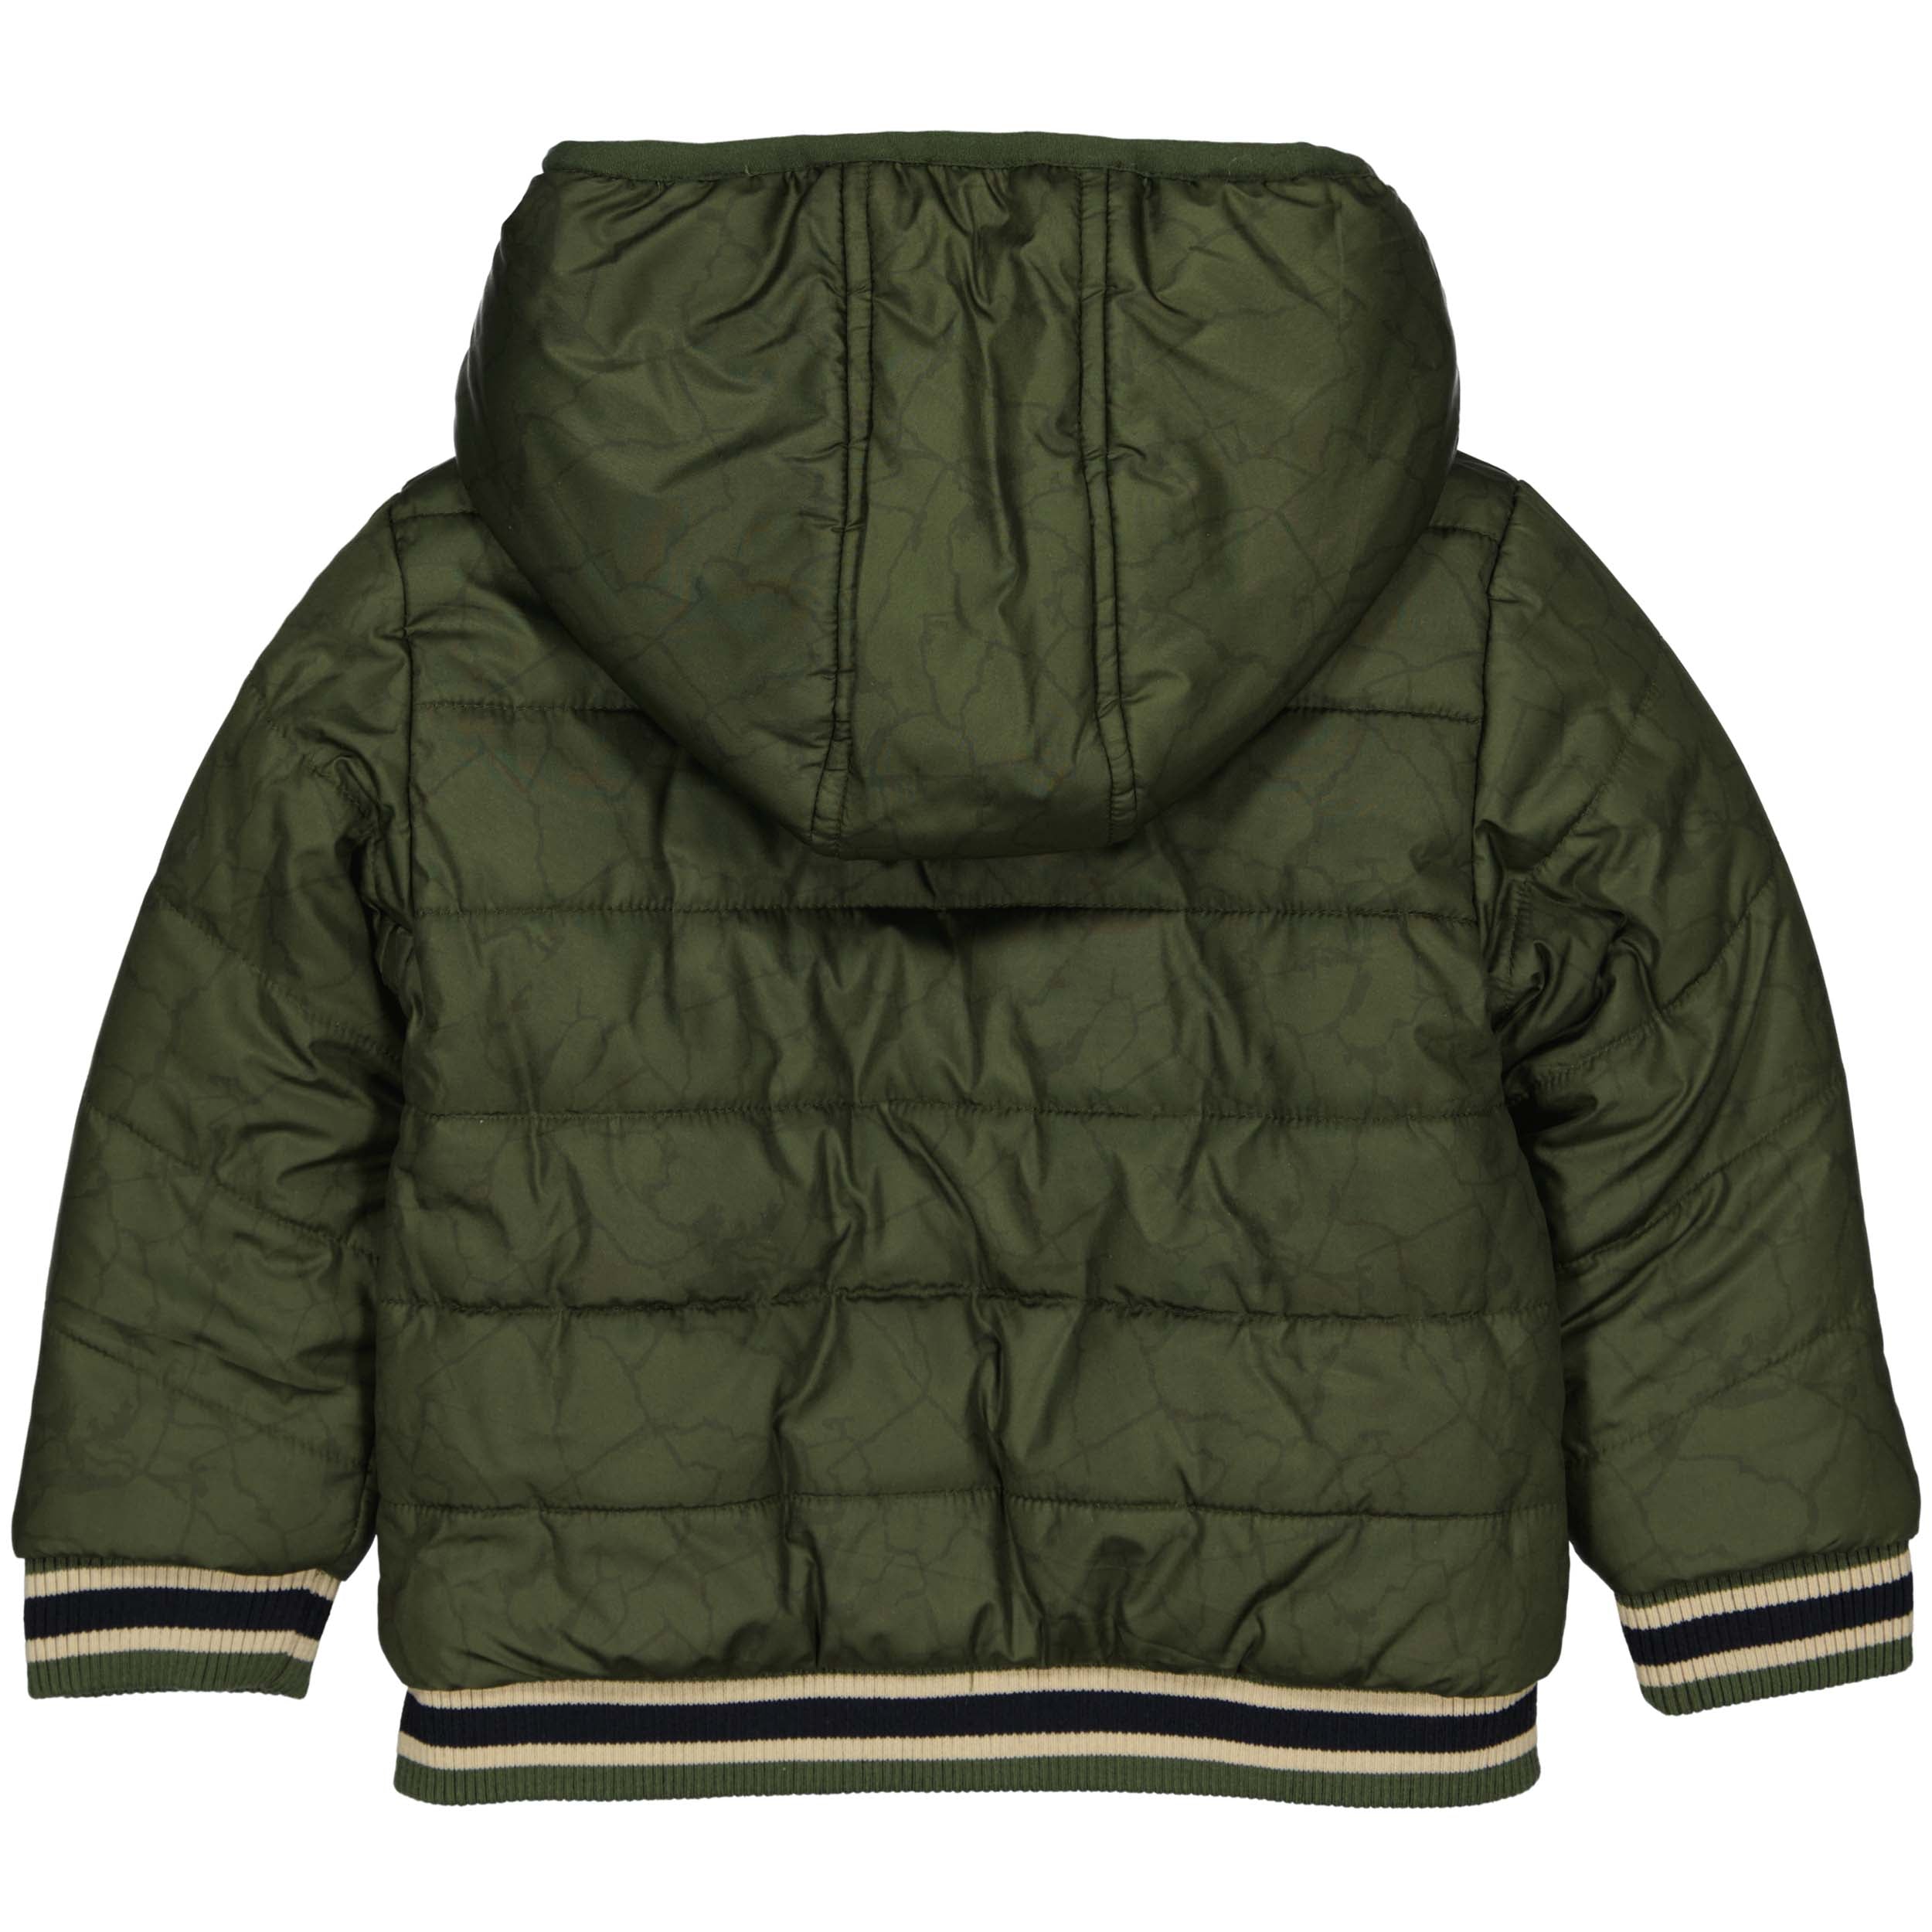 Meisjes Jacket RICKW220 van Quapi in de kleur AOP Green Wood Grunge in maat 98-104.